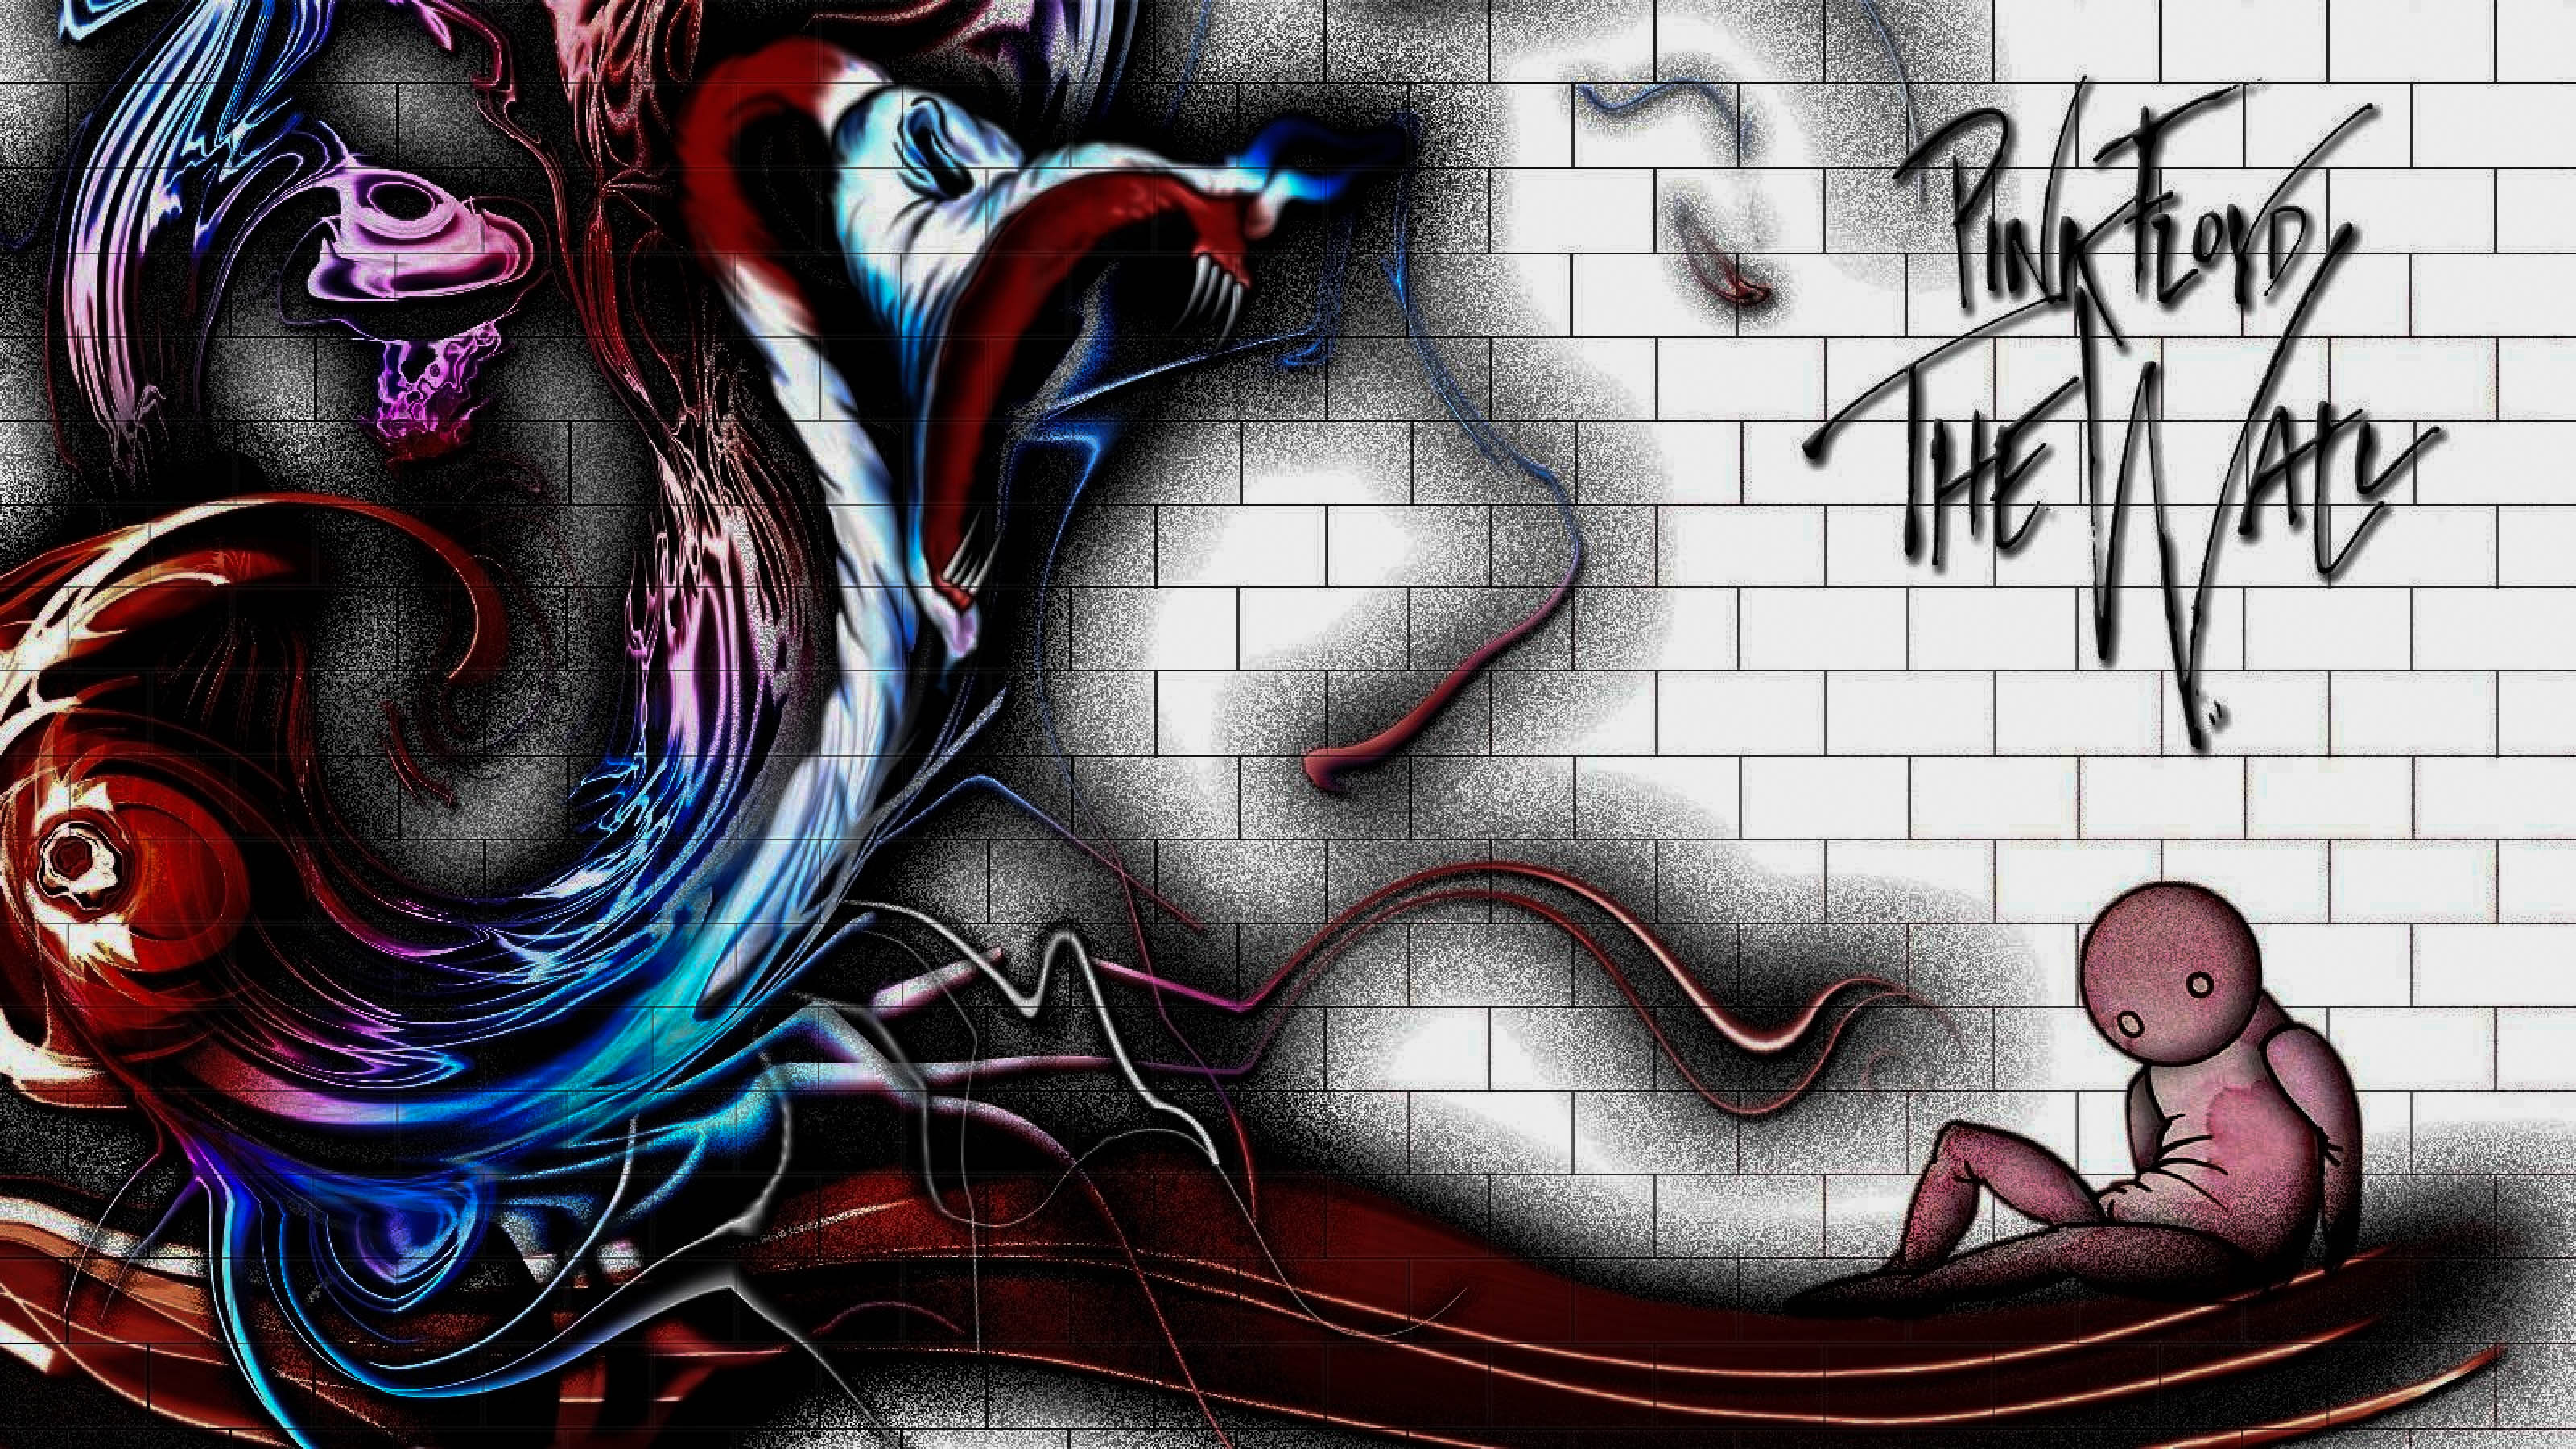 Wall Art Pink Floyd - 3200x1800 Wallpaper 